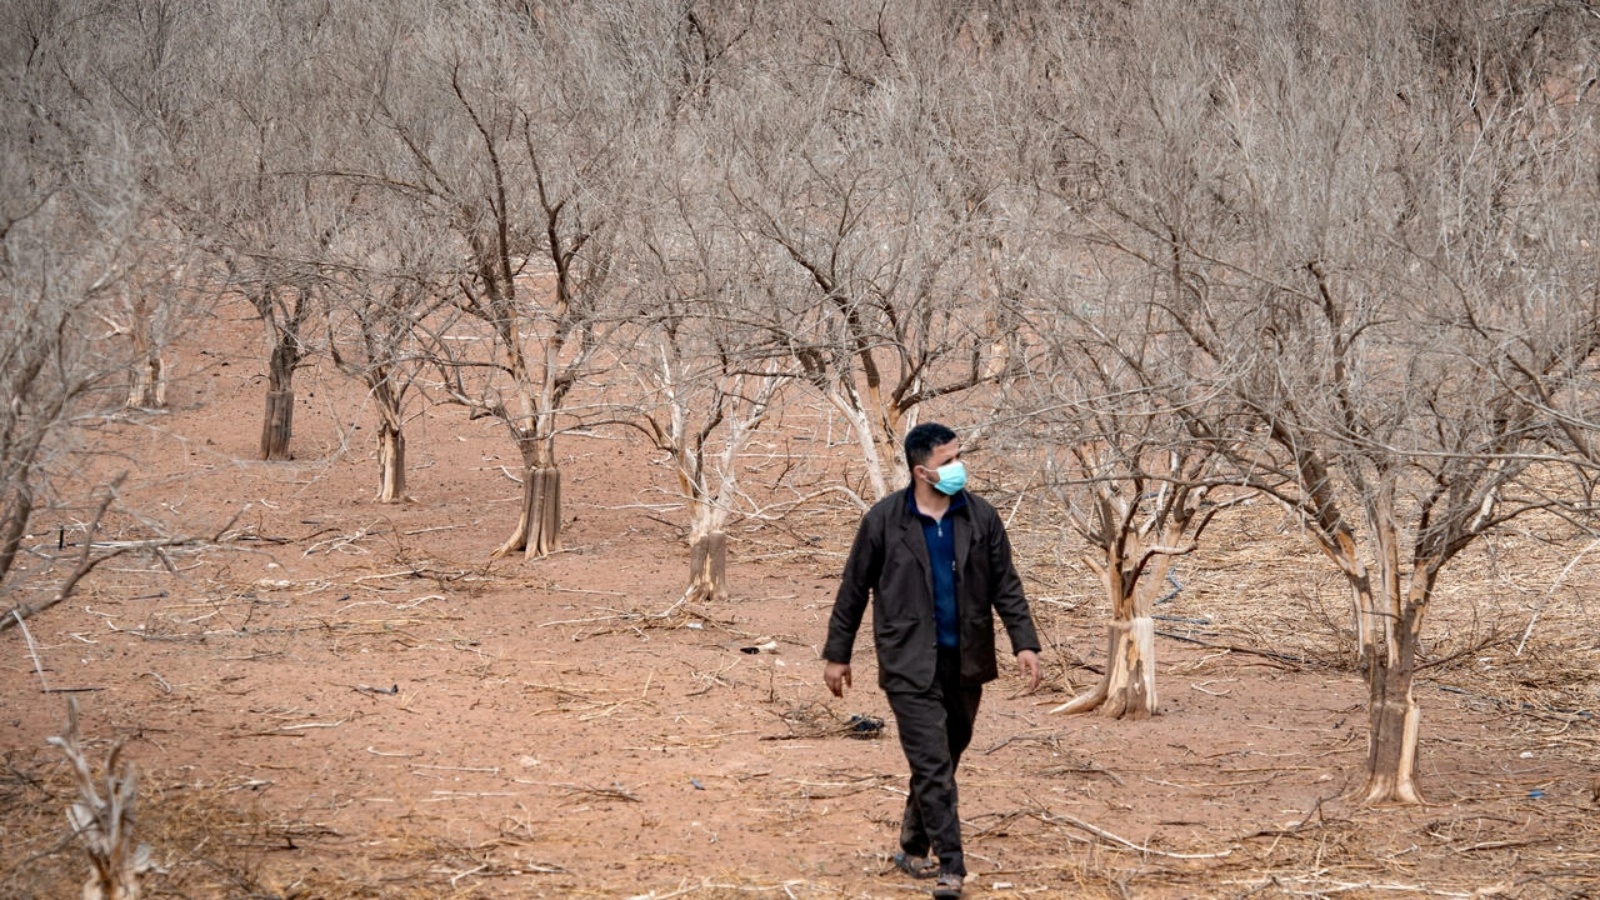 صورة التقطت في 22 أكتوبر 2020 لمزارع يسير بين أشجار برتقال يبست بسبب الجفاف في سهول أغادير جنوب المغرب الذي يشهد أسوأ موجة جفاف منذ 40 عاماً